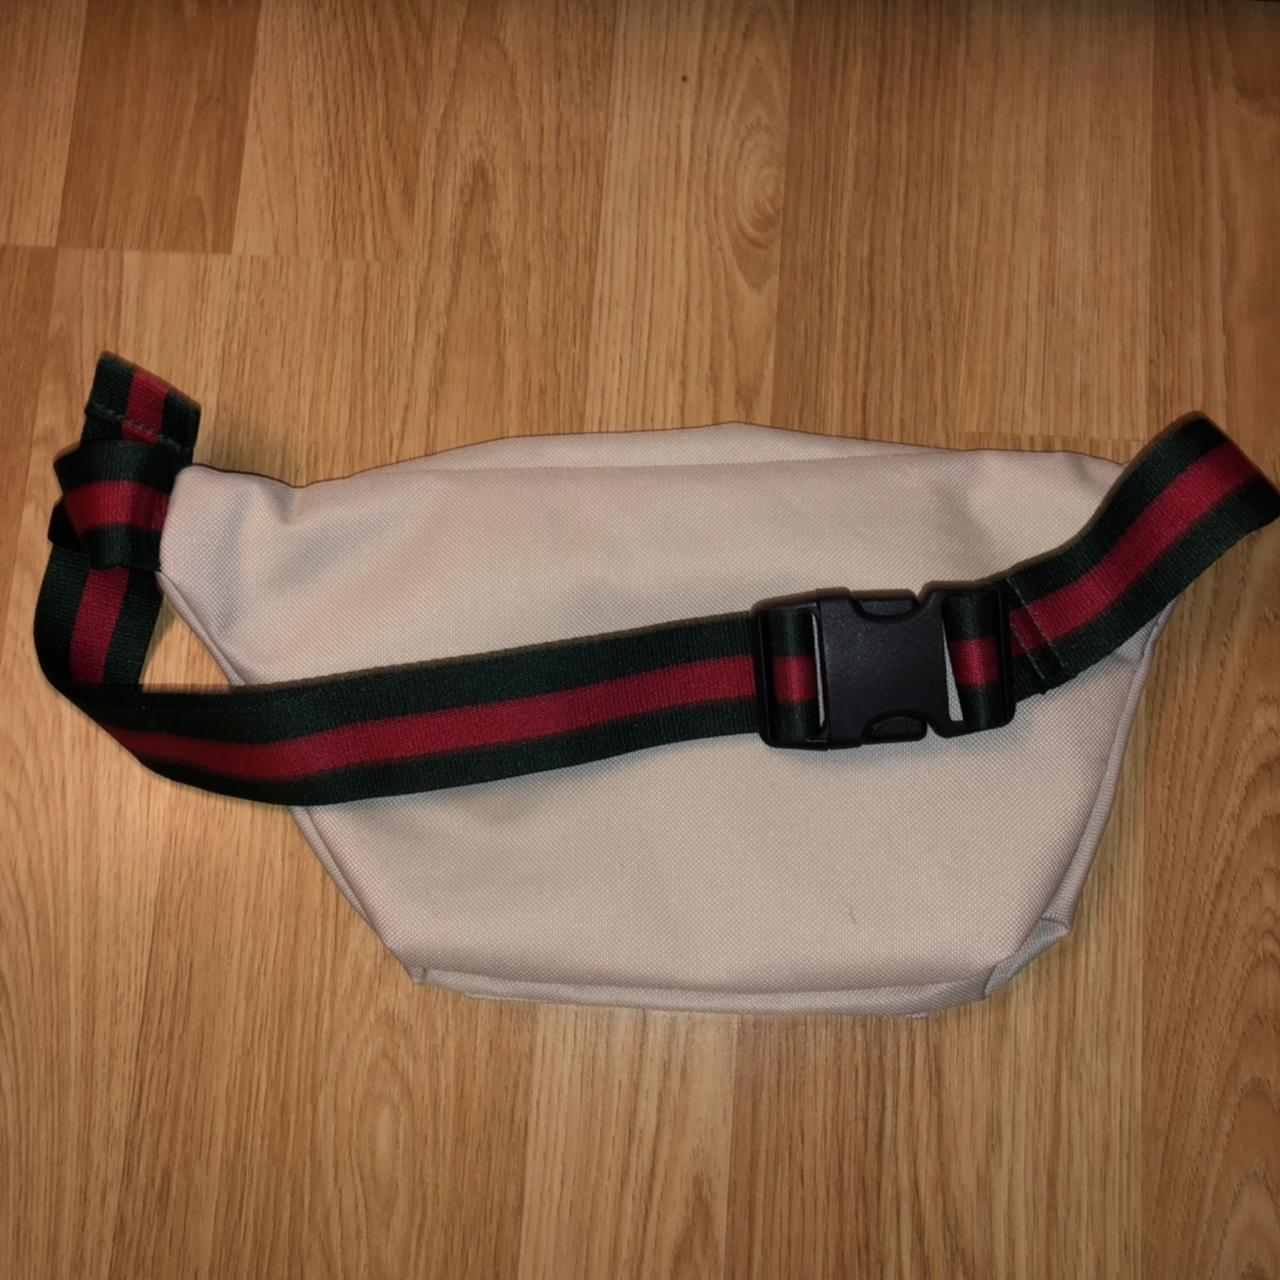 Red MCM belt bag/Fanny pack. Asking $400 OBO - Depop